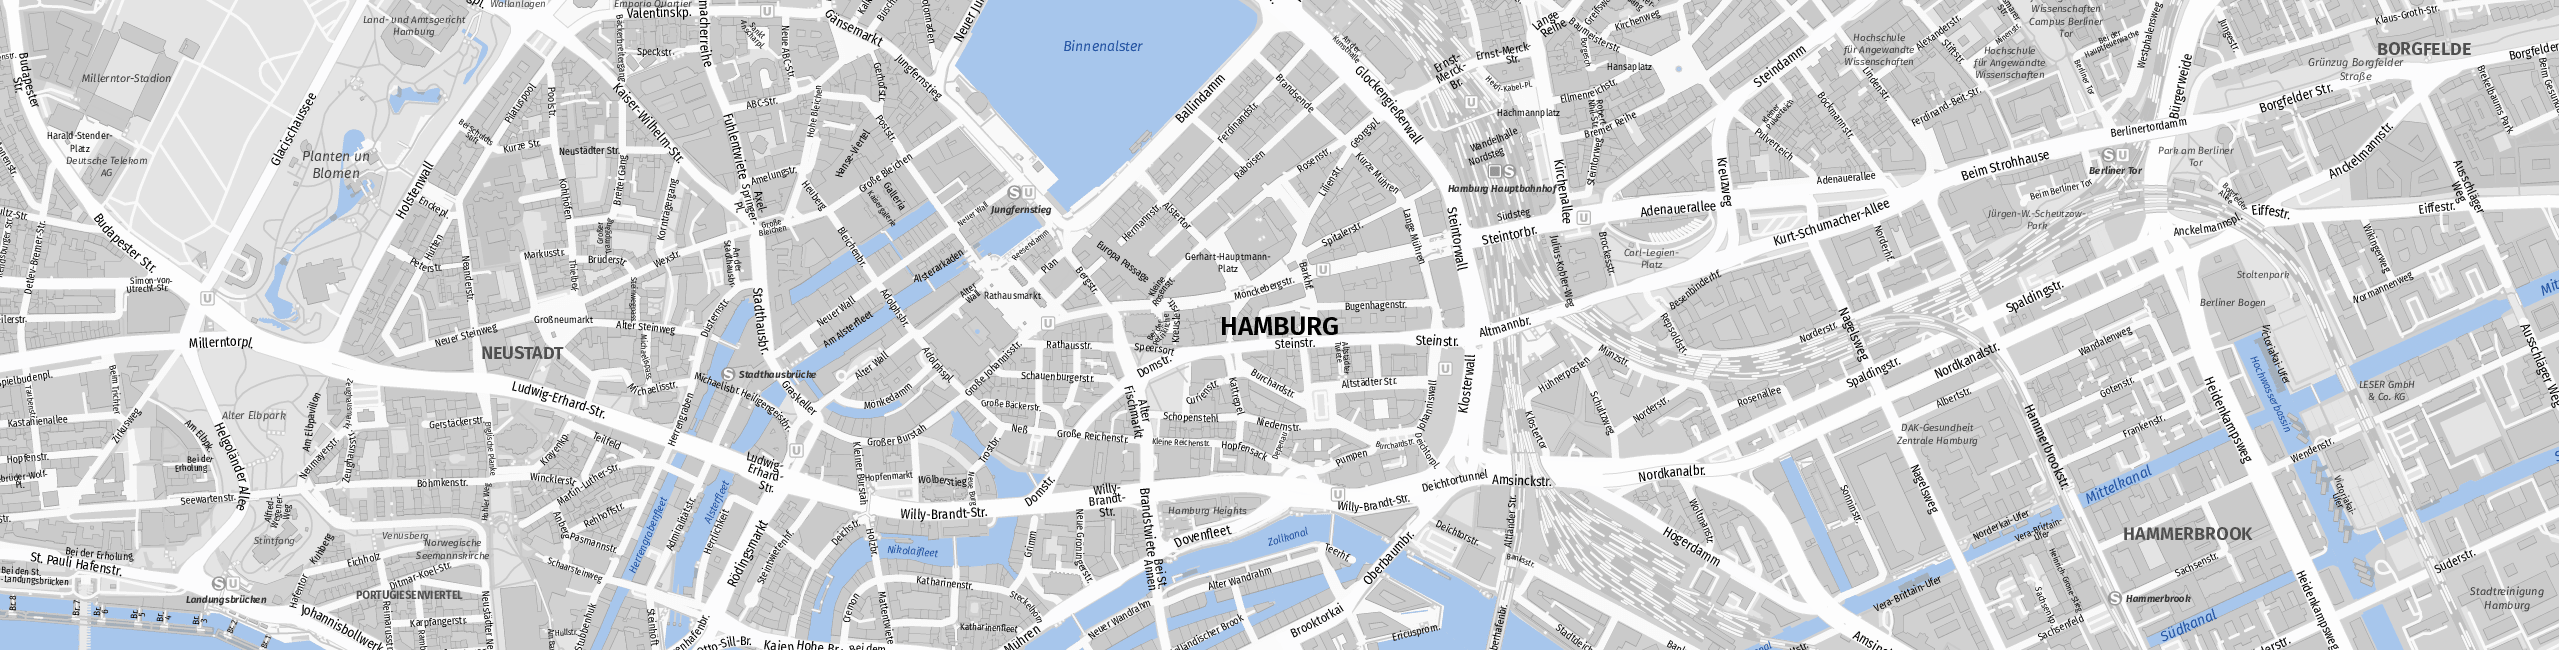 Stadtplan Hamburg zum Downloaden.